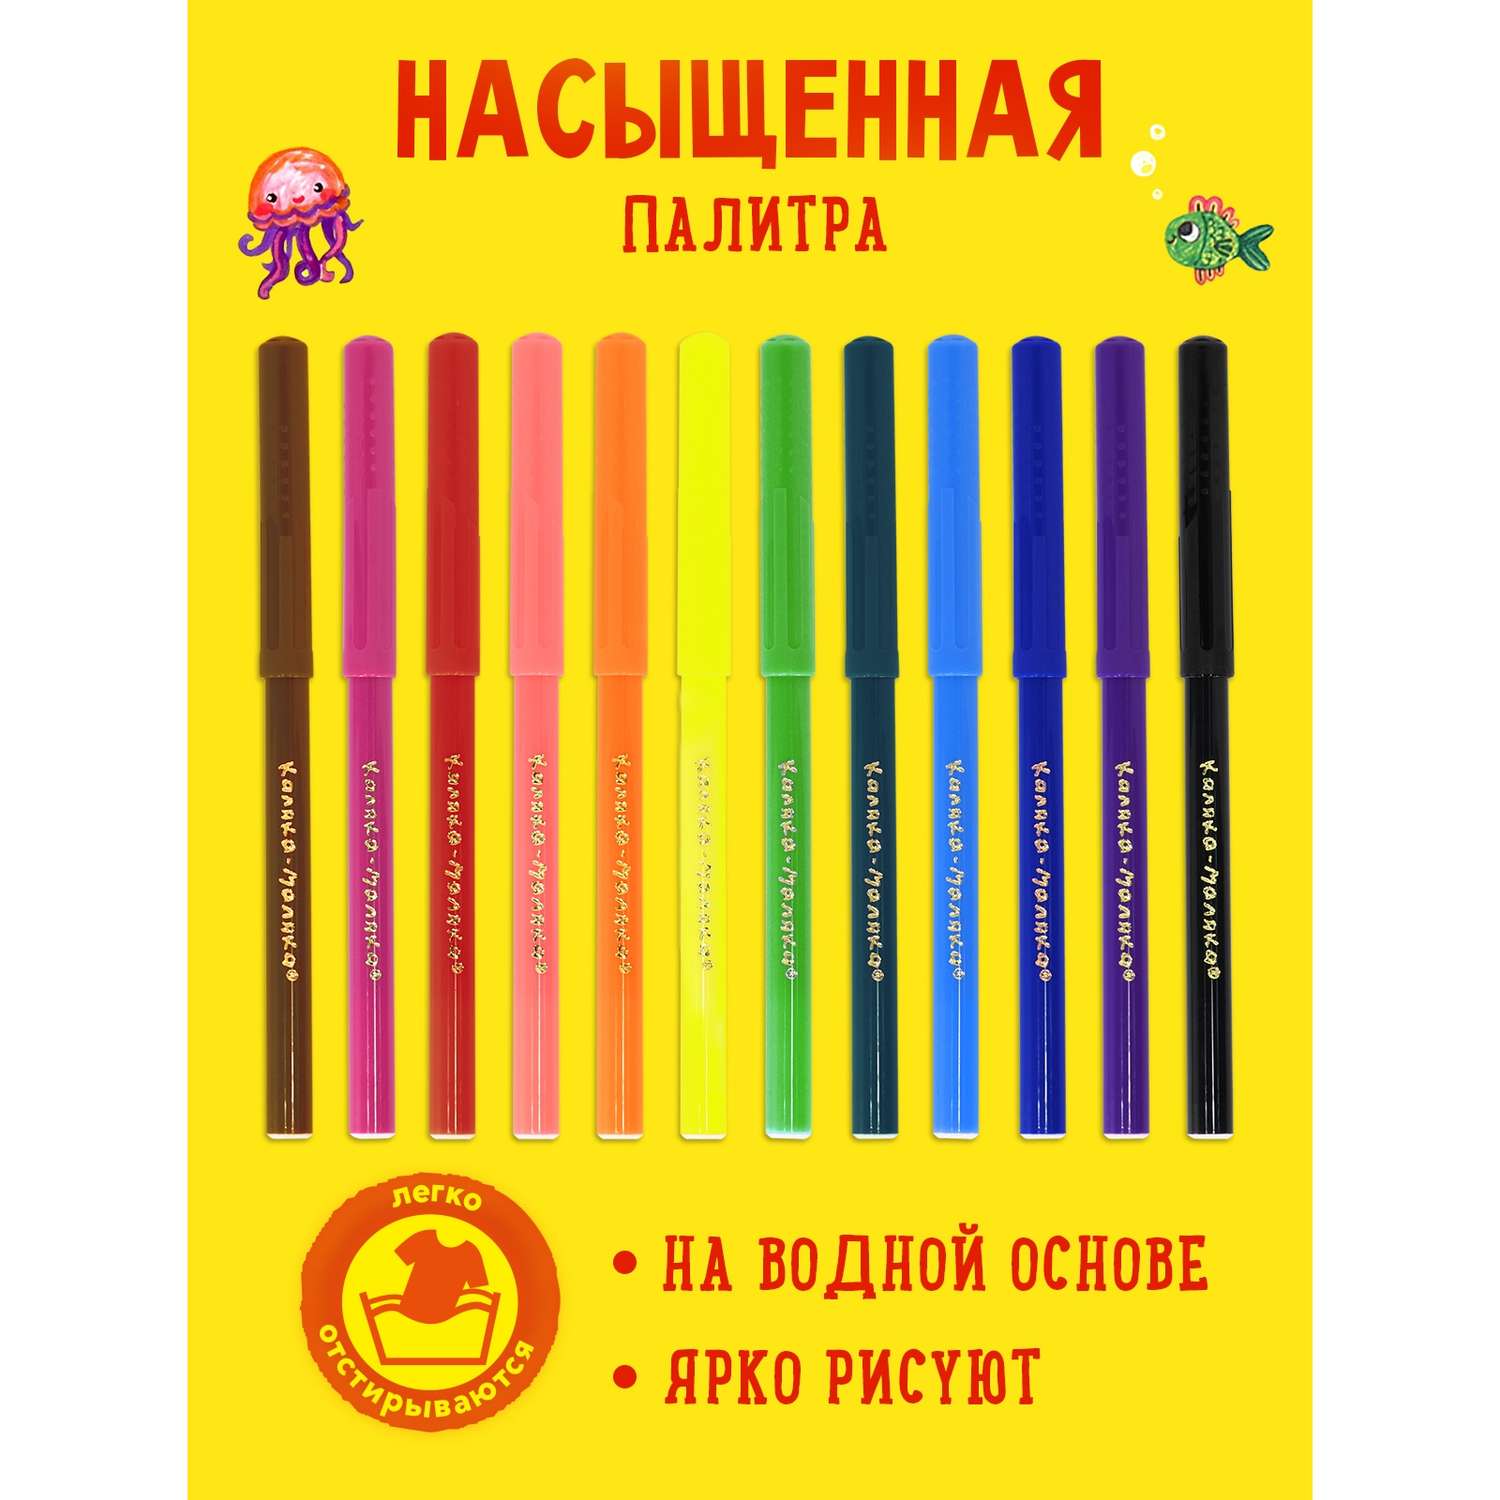 Фломастеры КАЛЯКА МАЛЯКА для рисования детские классические набор 12 цветов - фото 2